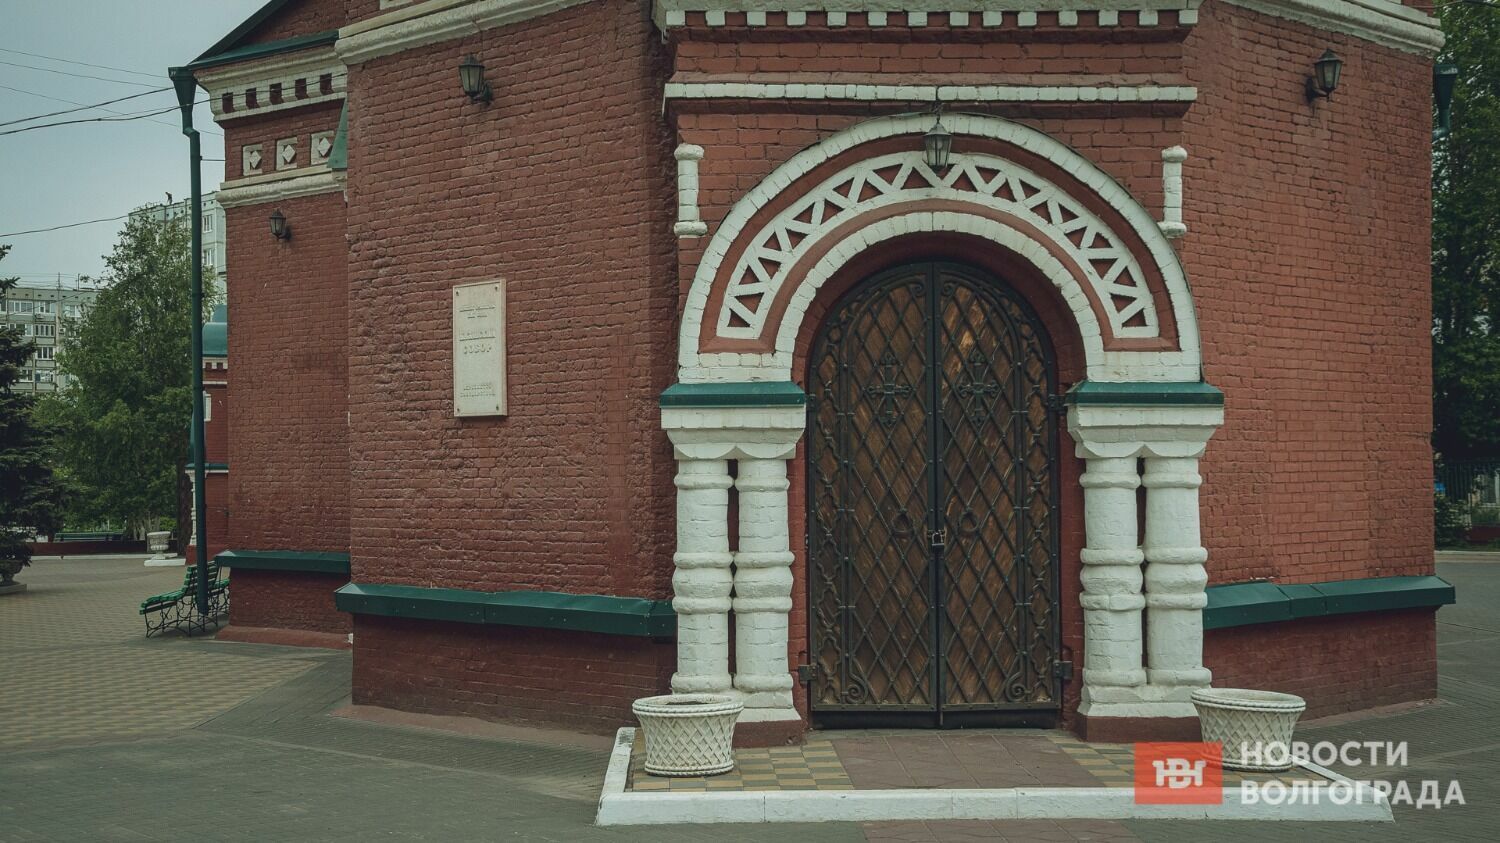 Храм Казанской иконы Божией Матери — некогда главный собор Волгограда, и по-прежнему один из красивейших православных храмов Волгограда.